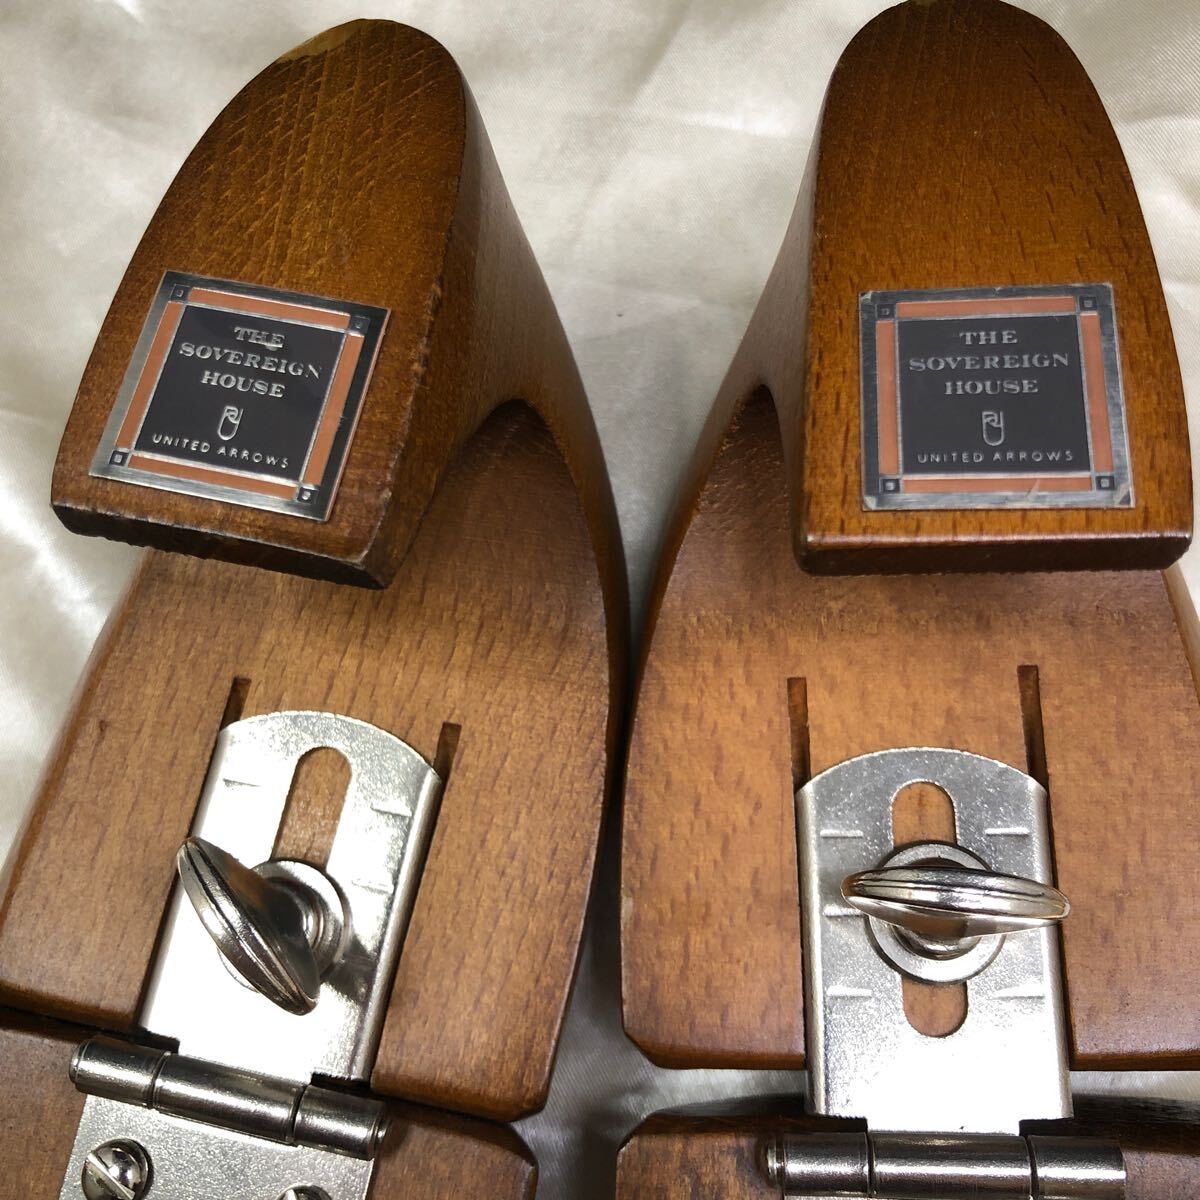 シューツリー 3組セット ザソブリンハウス コルドヌリ・アングレーズ コルテ 3ブランド シューキーパー 木製 紳士靴用 メンズシューズ用の画像3